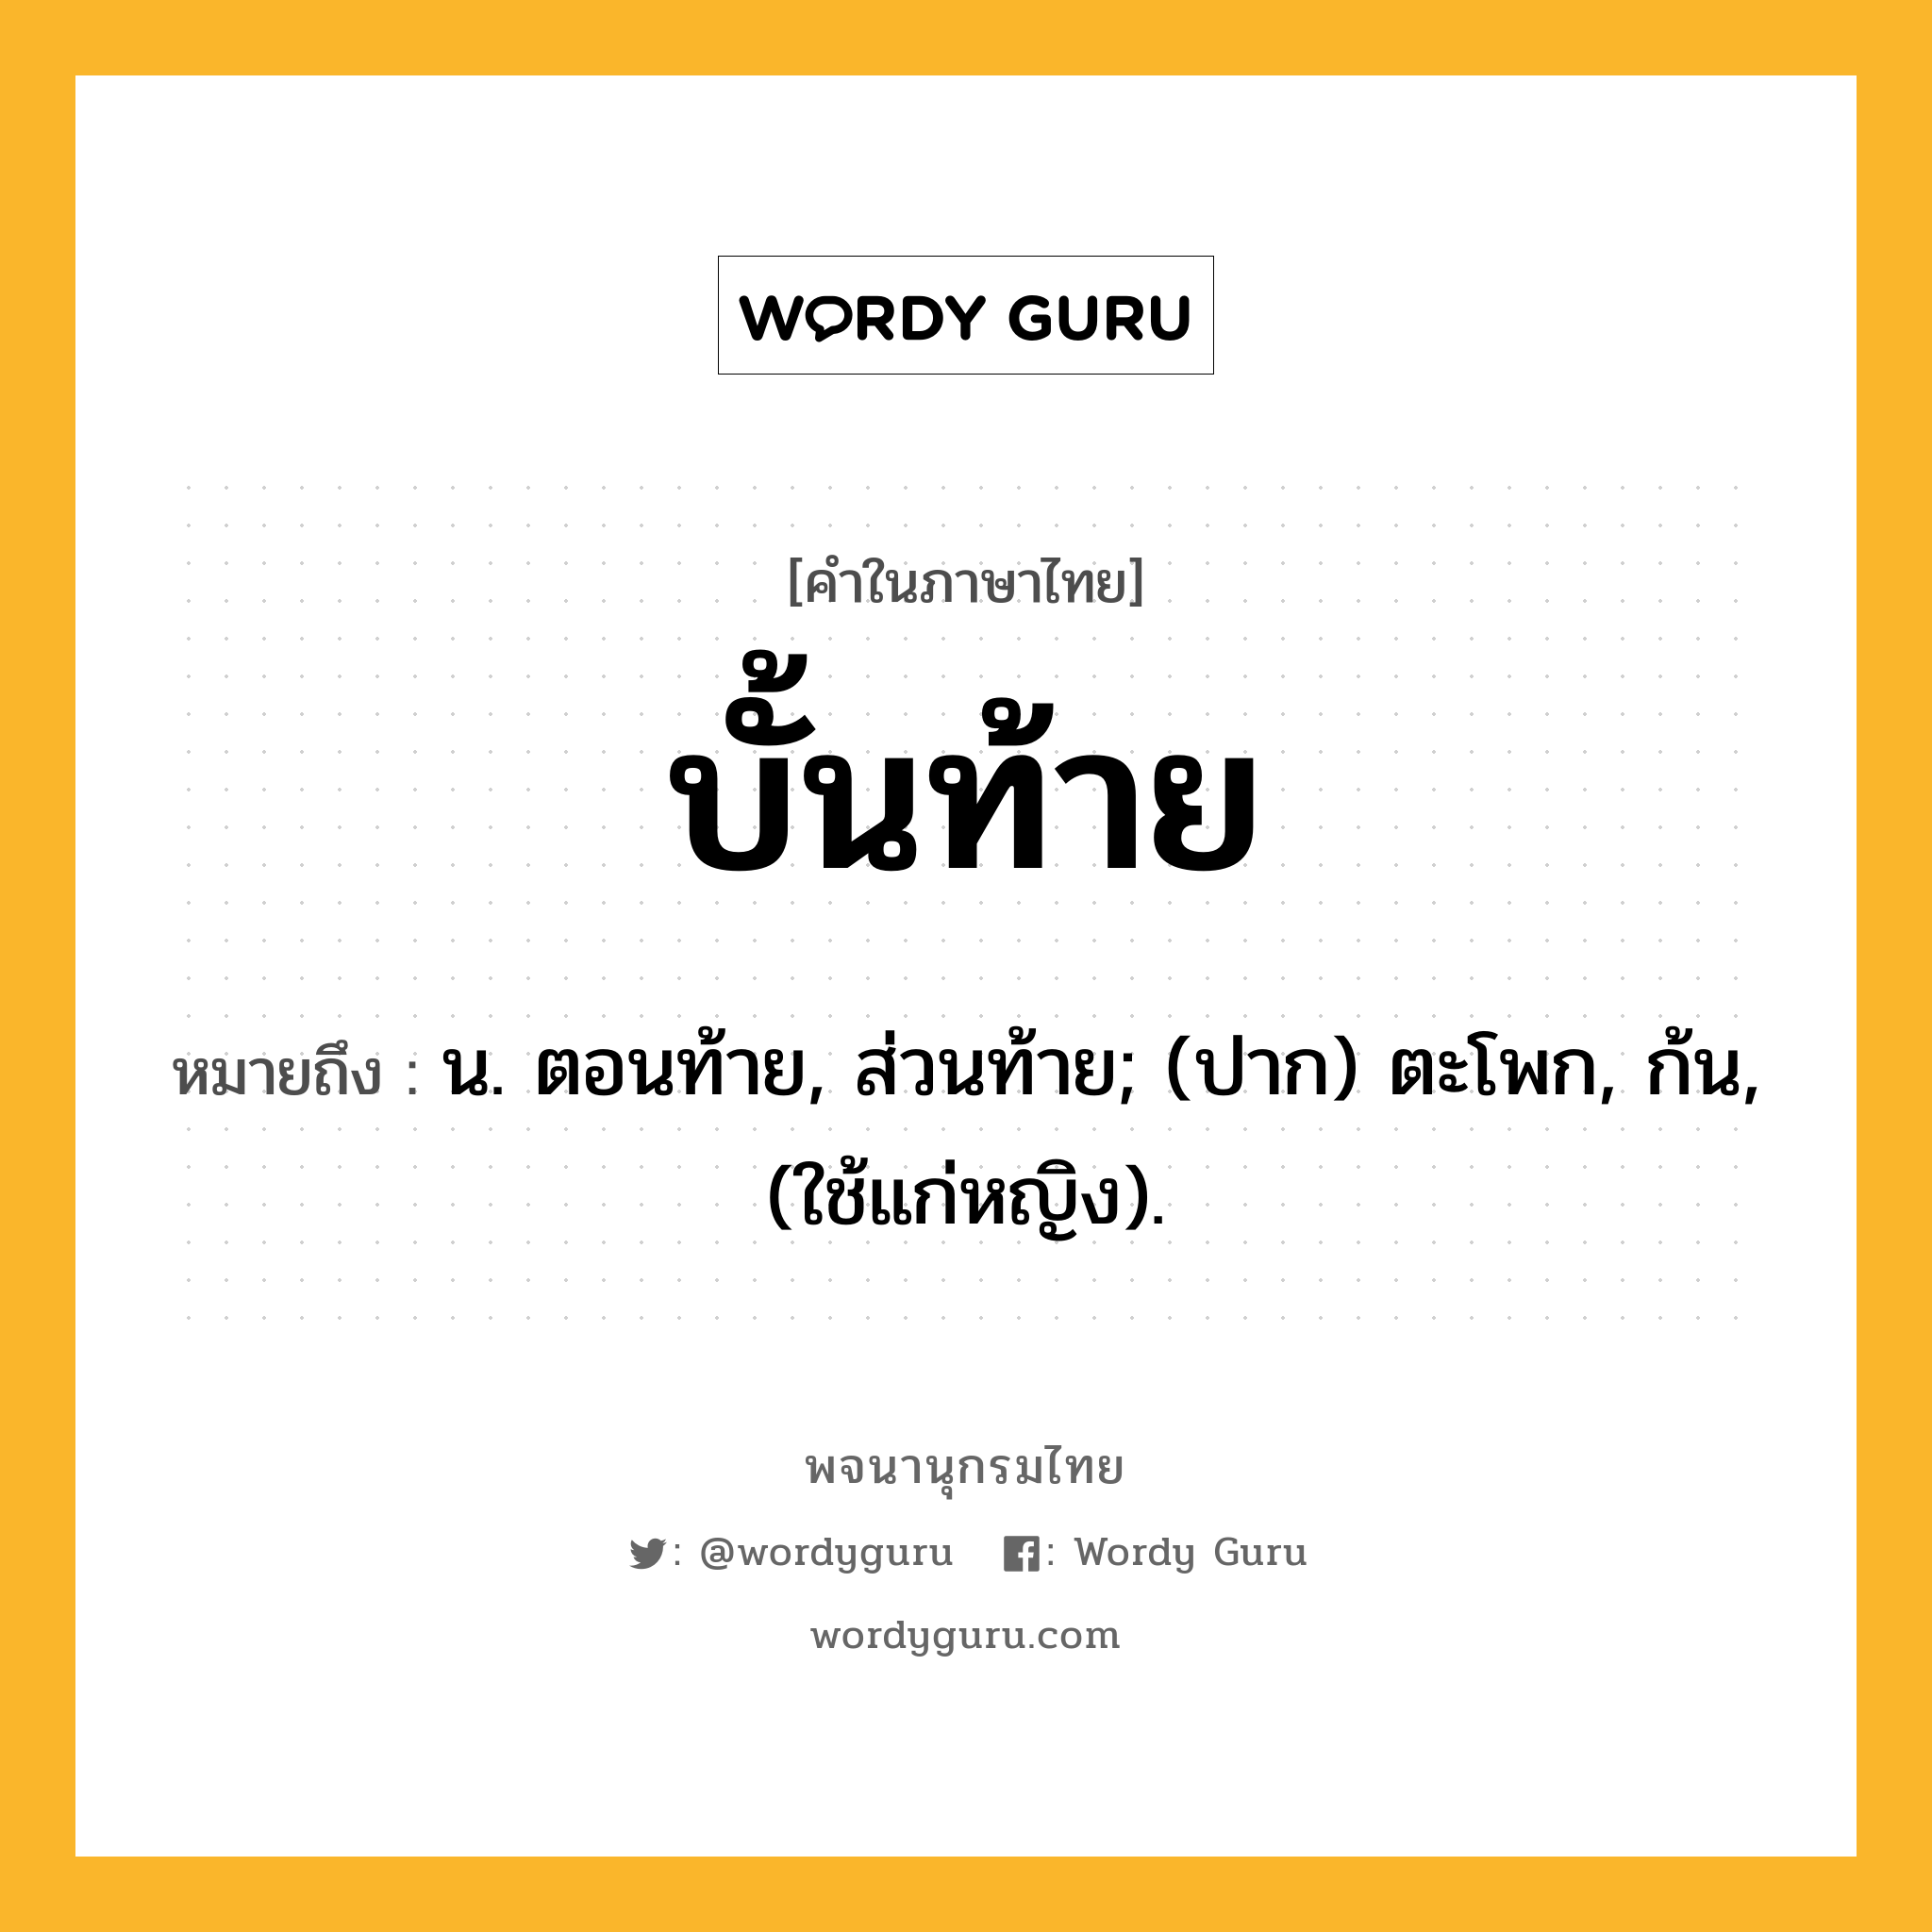 บั้นท้าย ความหมาย หมายถึงอะไร?, คำในภาษาไทย บั้นท้าย หมายถึง น. ตอนท้าย, ส่วนท้าย; (ปาก) ตะโพก, ก้น, (ใช้แก่หญิง).